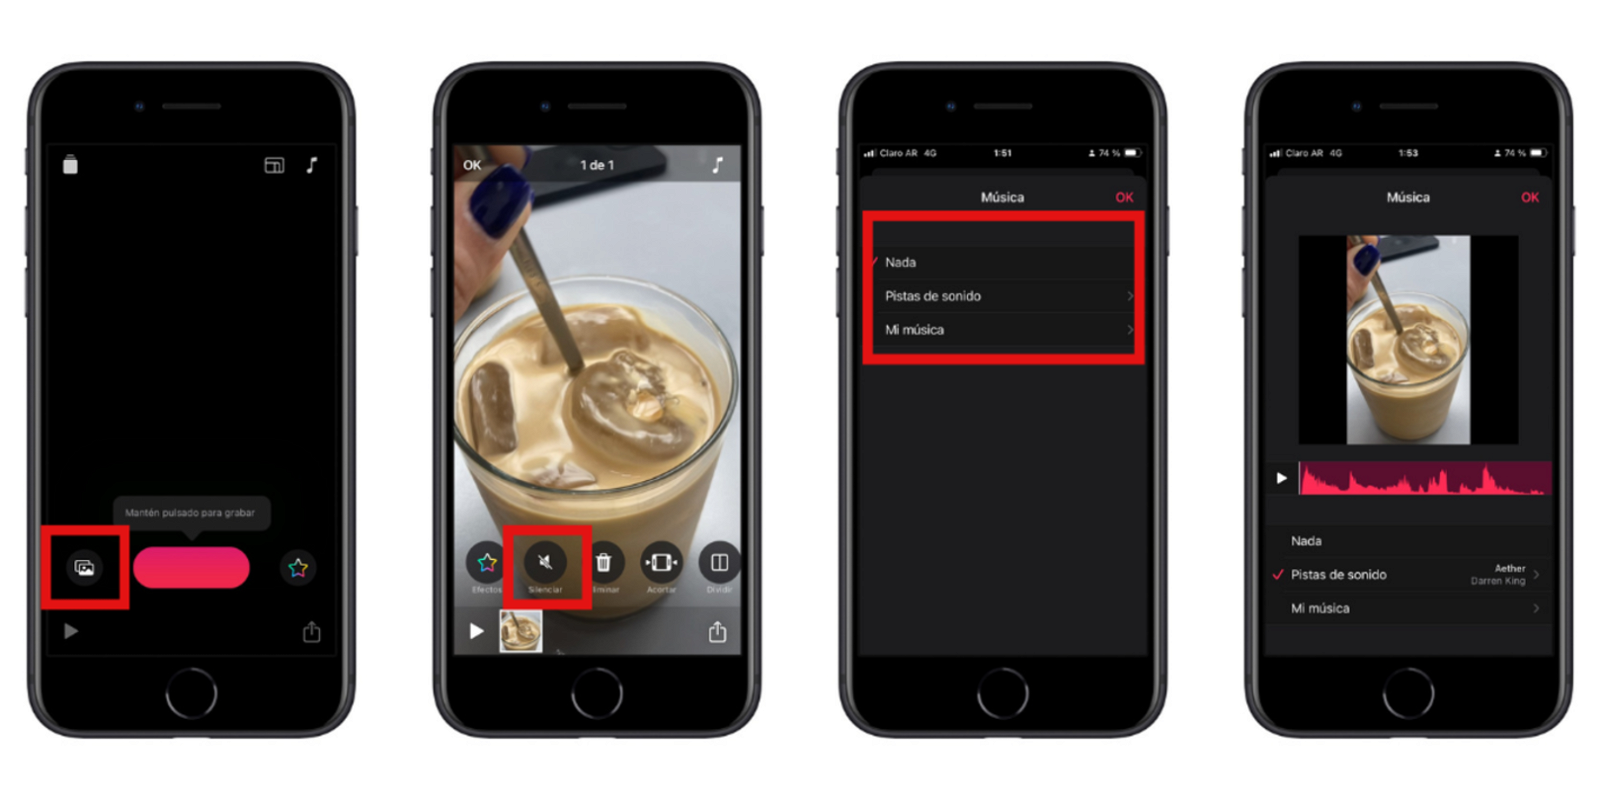 Cuatro pantallas de iPhone con el paso a paso para agregar música a un vídeo en la app Clips